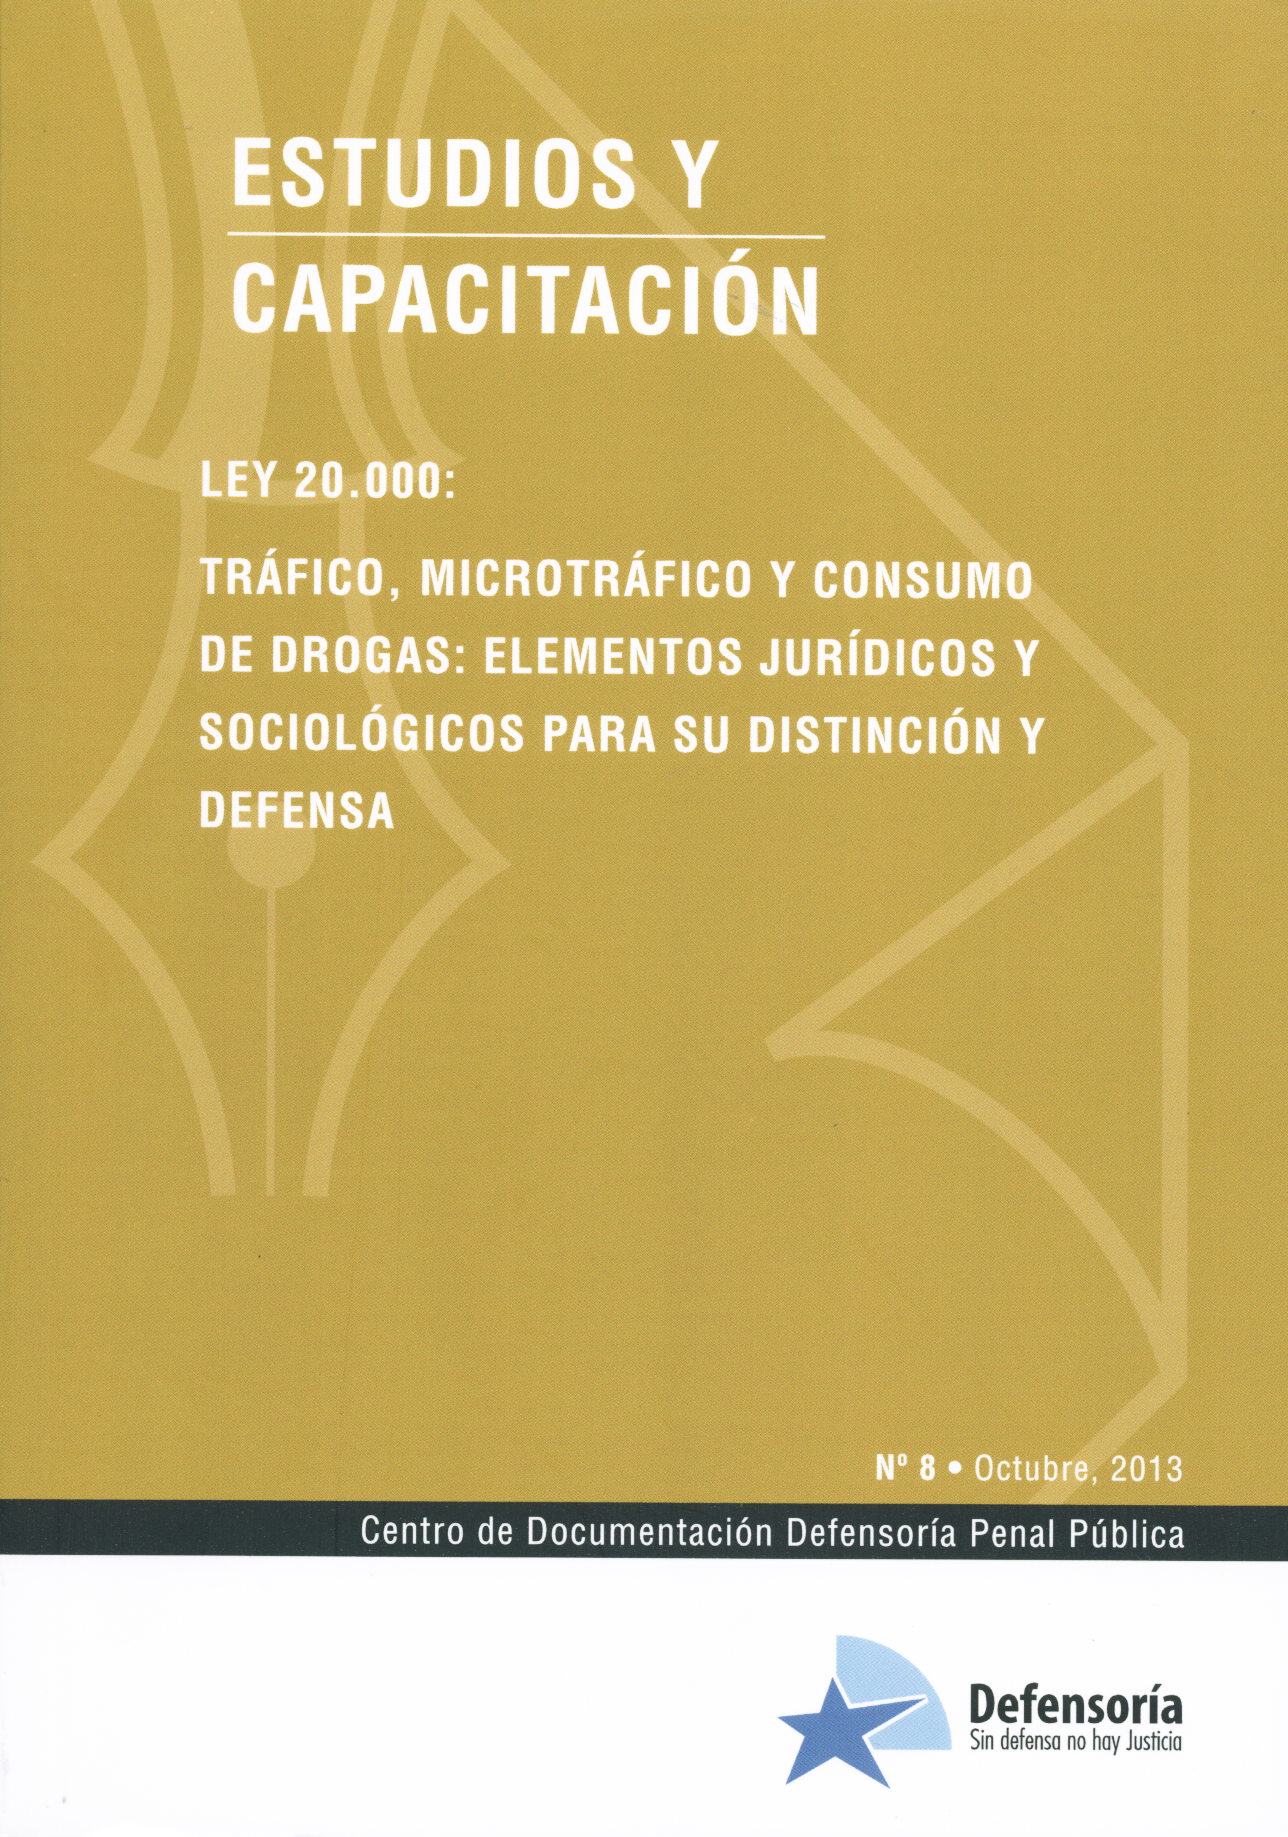 Ley 20.000: Tráfico, microtráfico y consumo de drogas: elementos jurídicos y sociológicos para su distinción y defensa